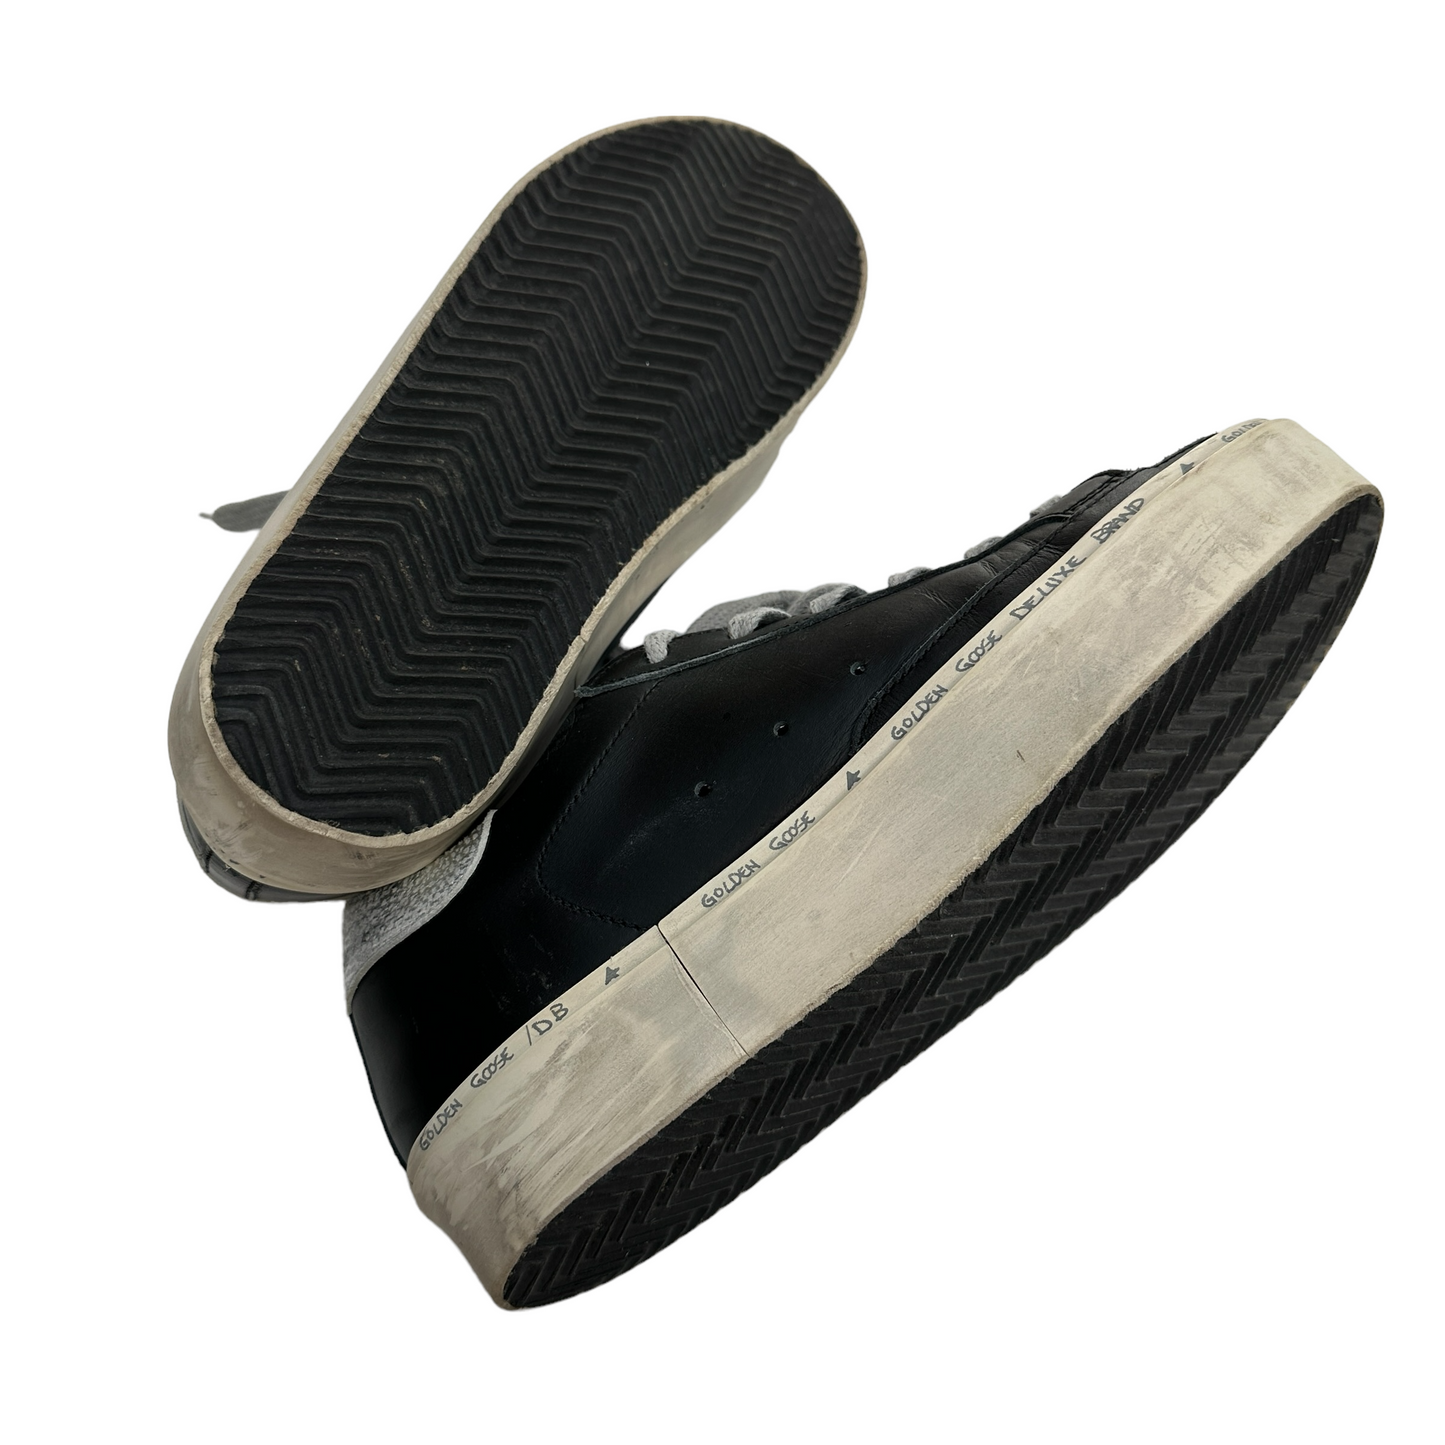 Black High Star Sneakers - 7